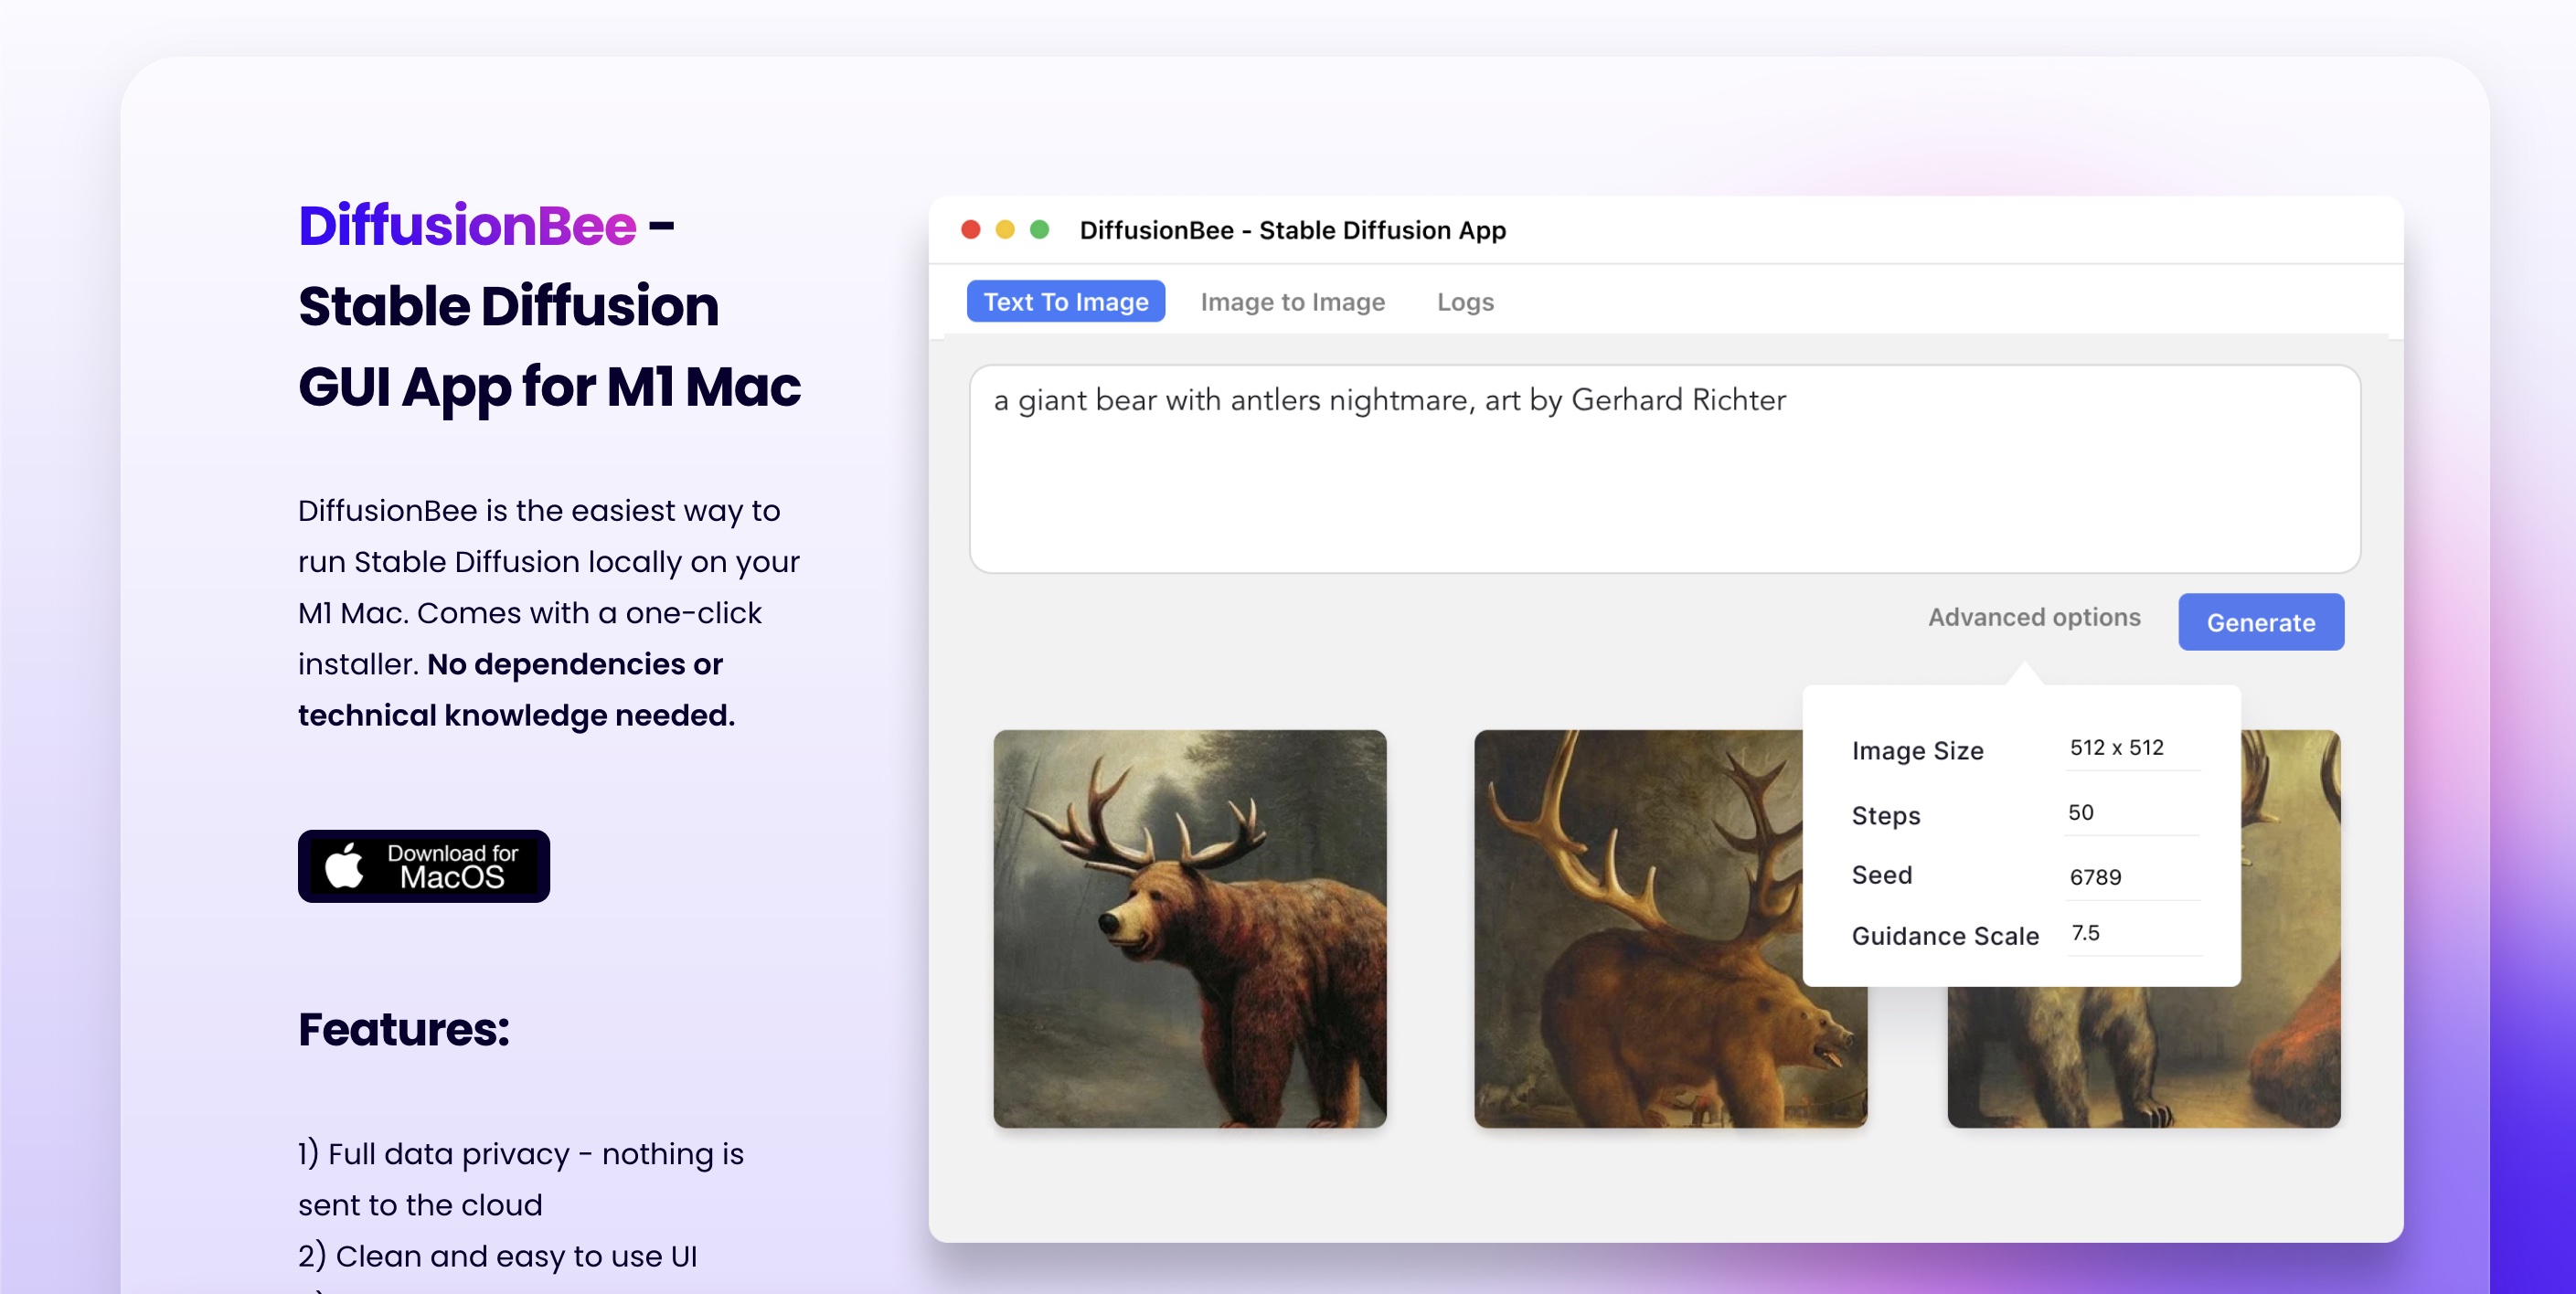 DiffusionBee - Stabile Diffusion Benutzeroberfläche für Mac -Benutzer